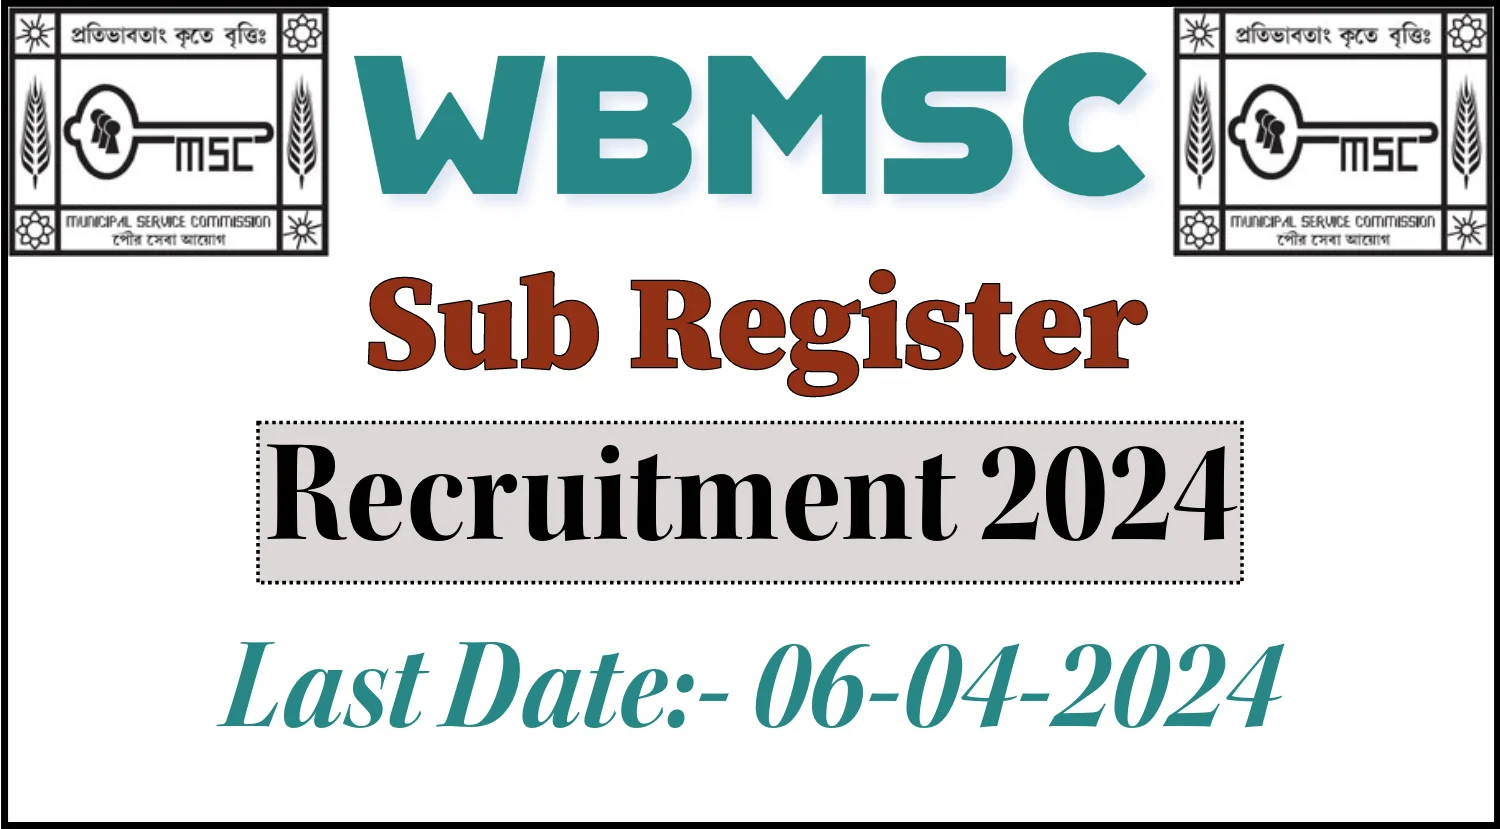 WBMSC Sub Register Recruitment 2024